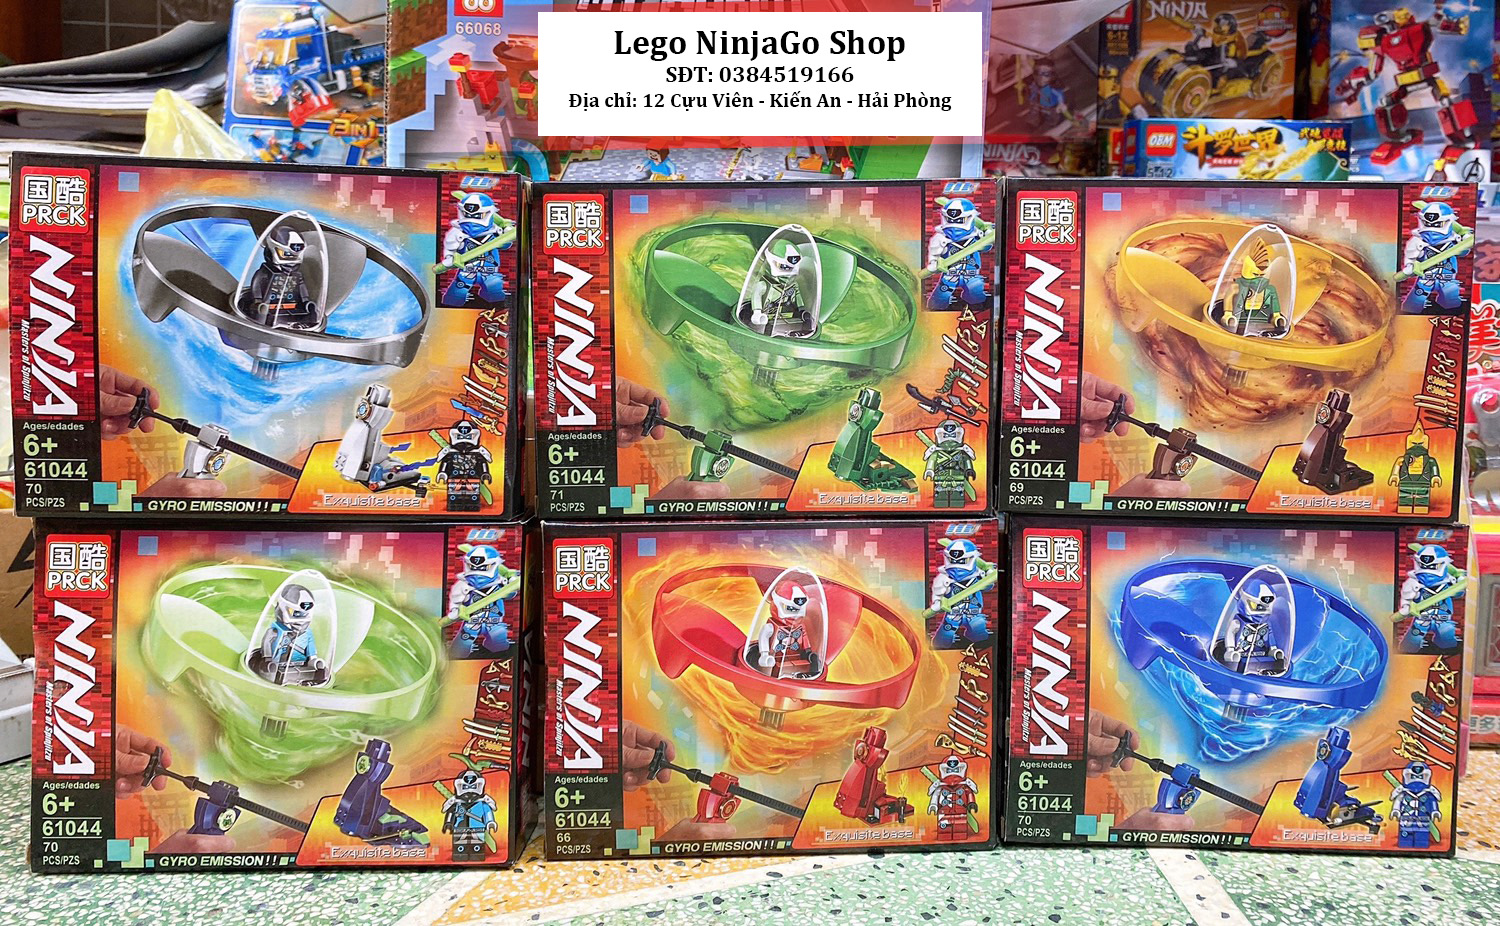 [Siêu Sale]  Bộ lắp ráp xếp hình Lego Nịnago prck 61044: Con quay vô cực Ninjago mẫu mới (70+ mảnh)